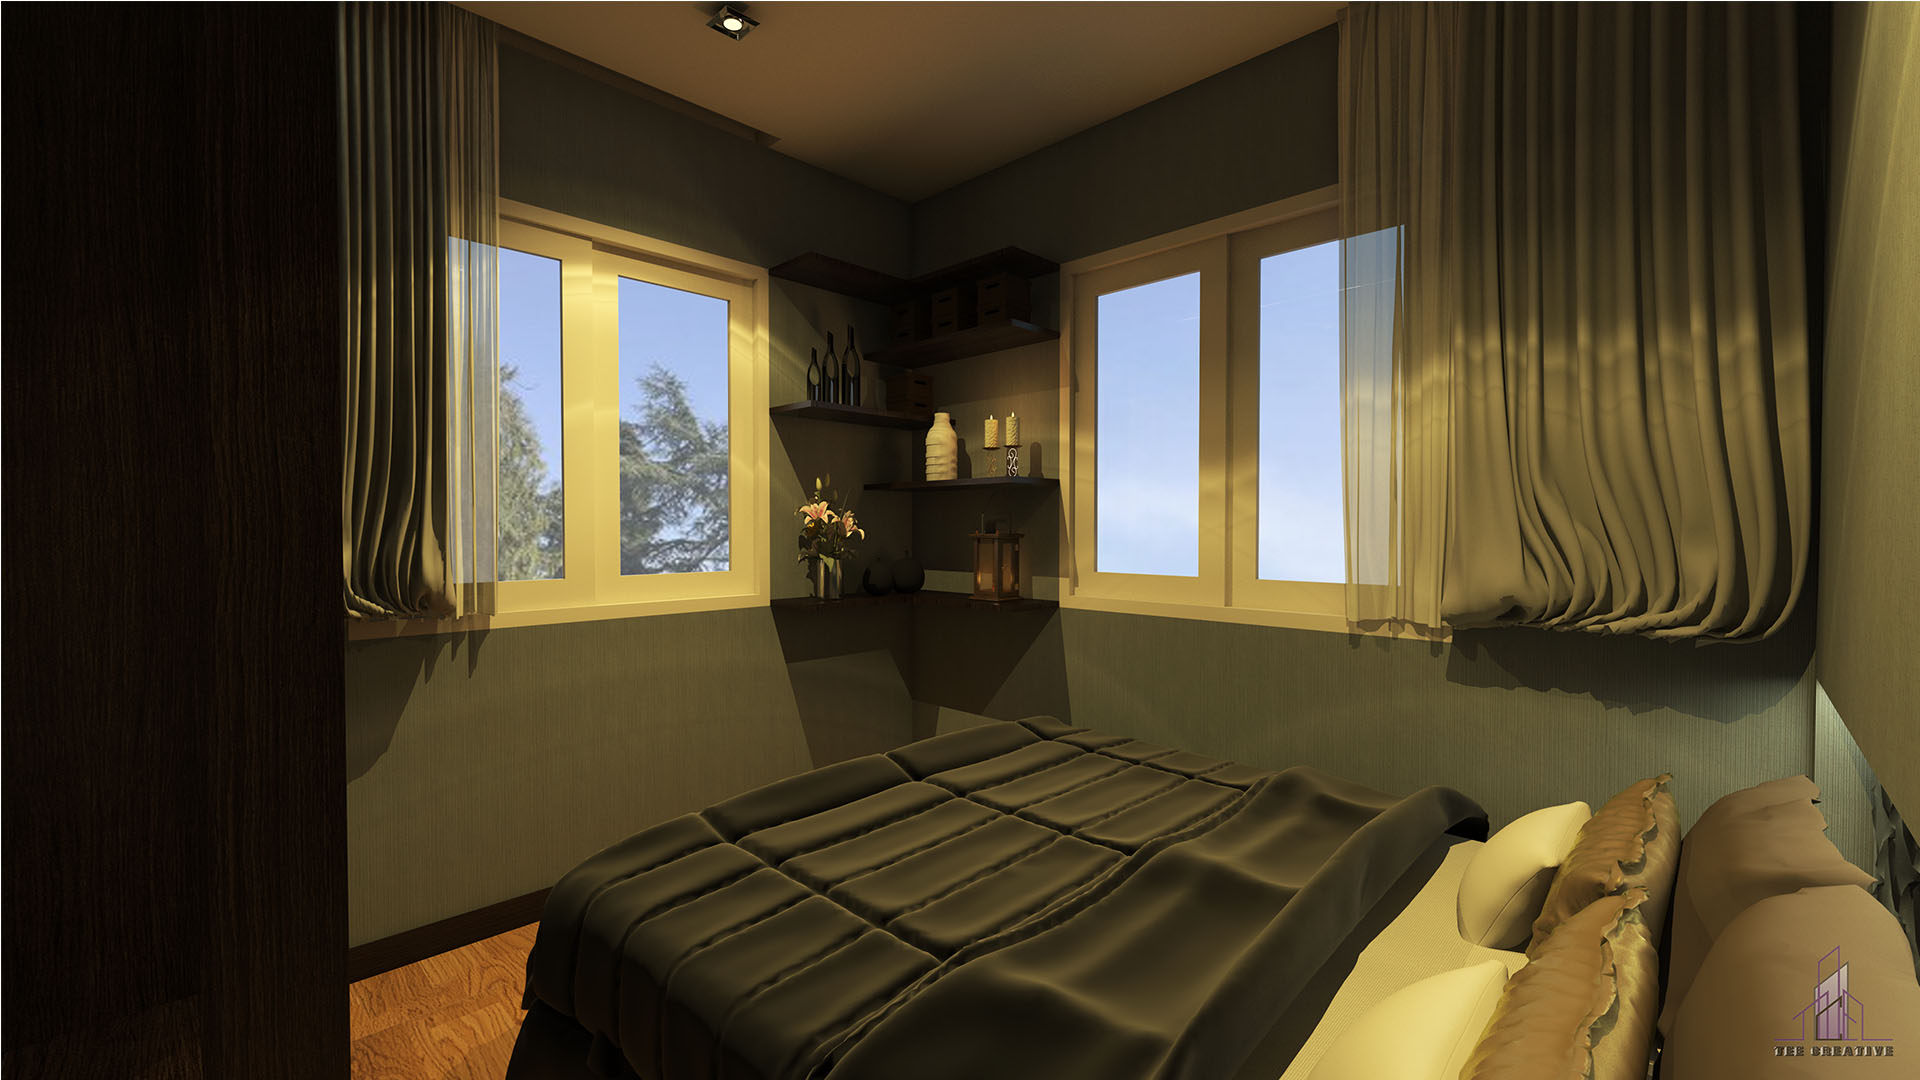 Home Design Bed room